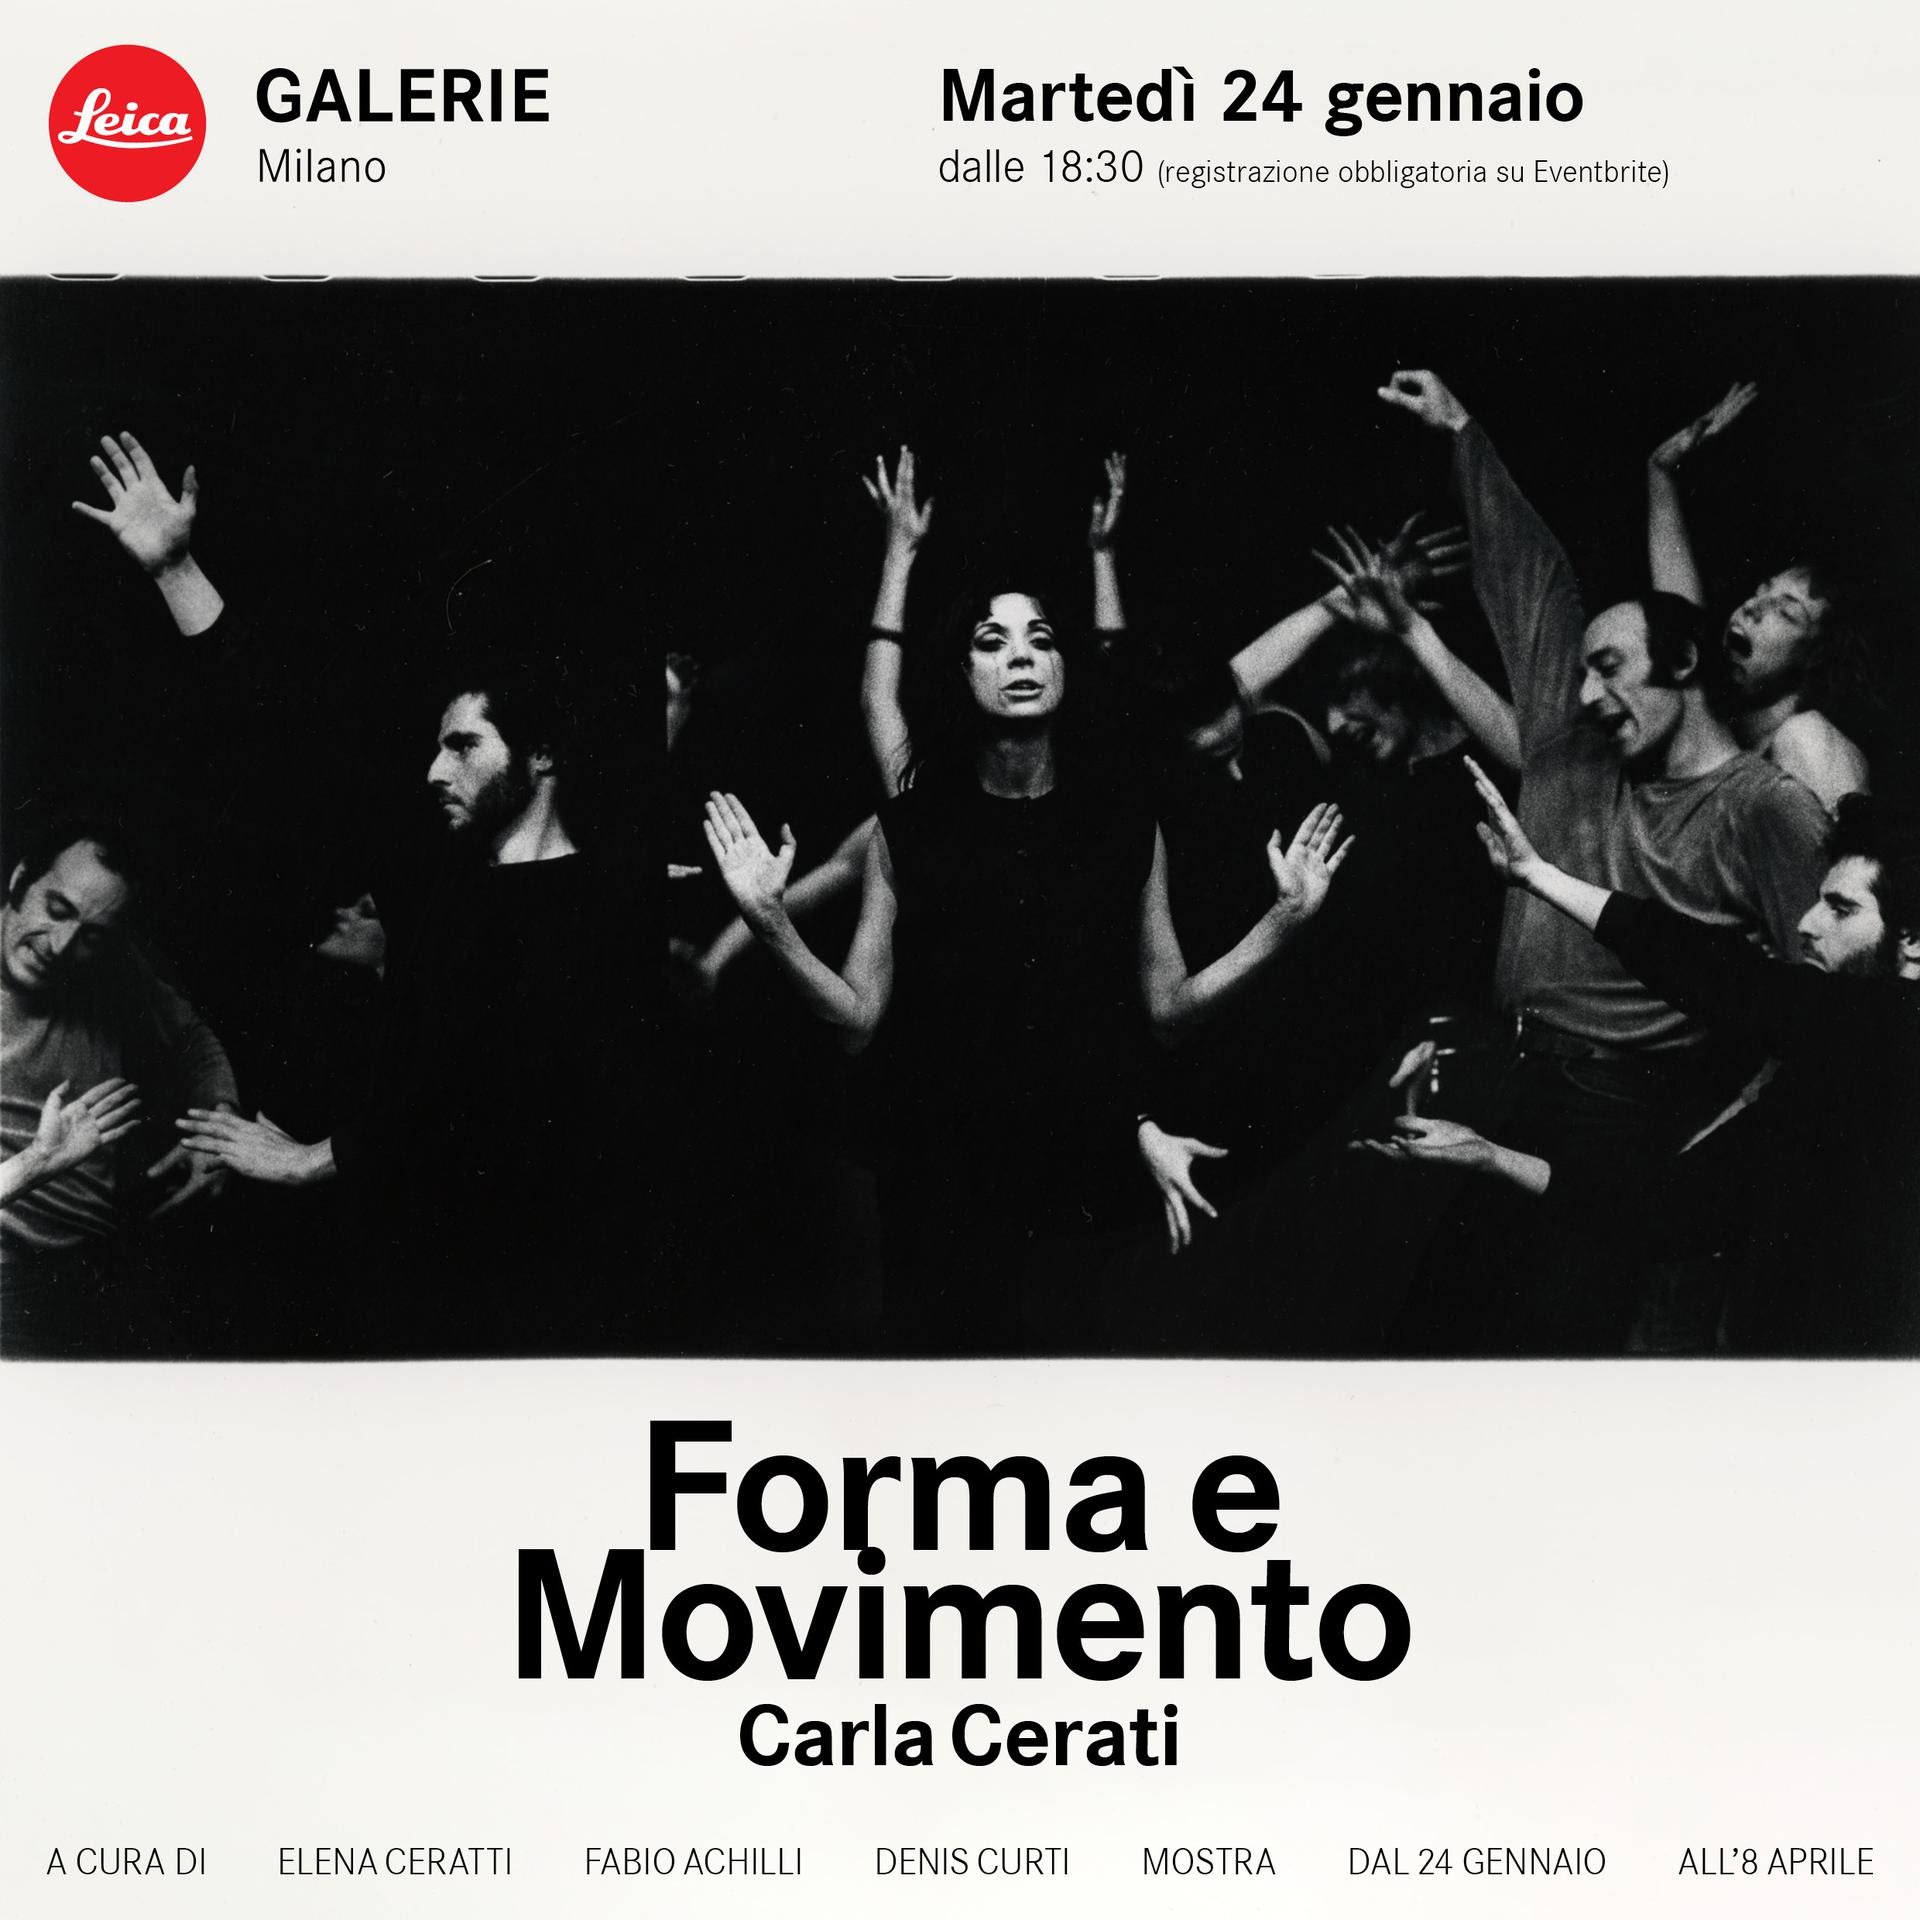 Carla Cerati – Forma e Movimento